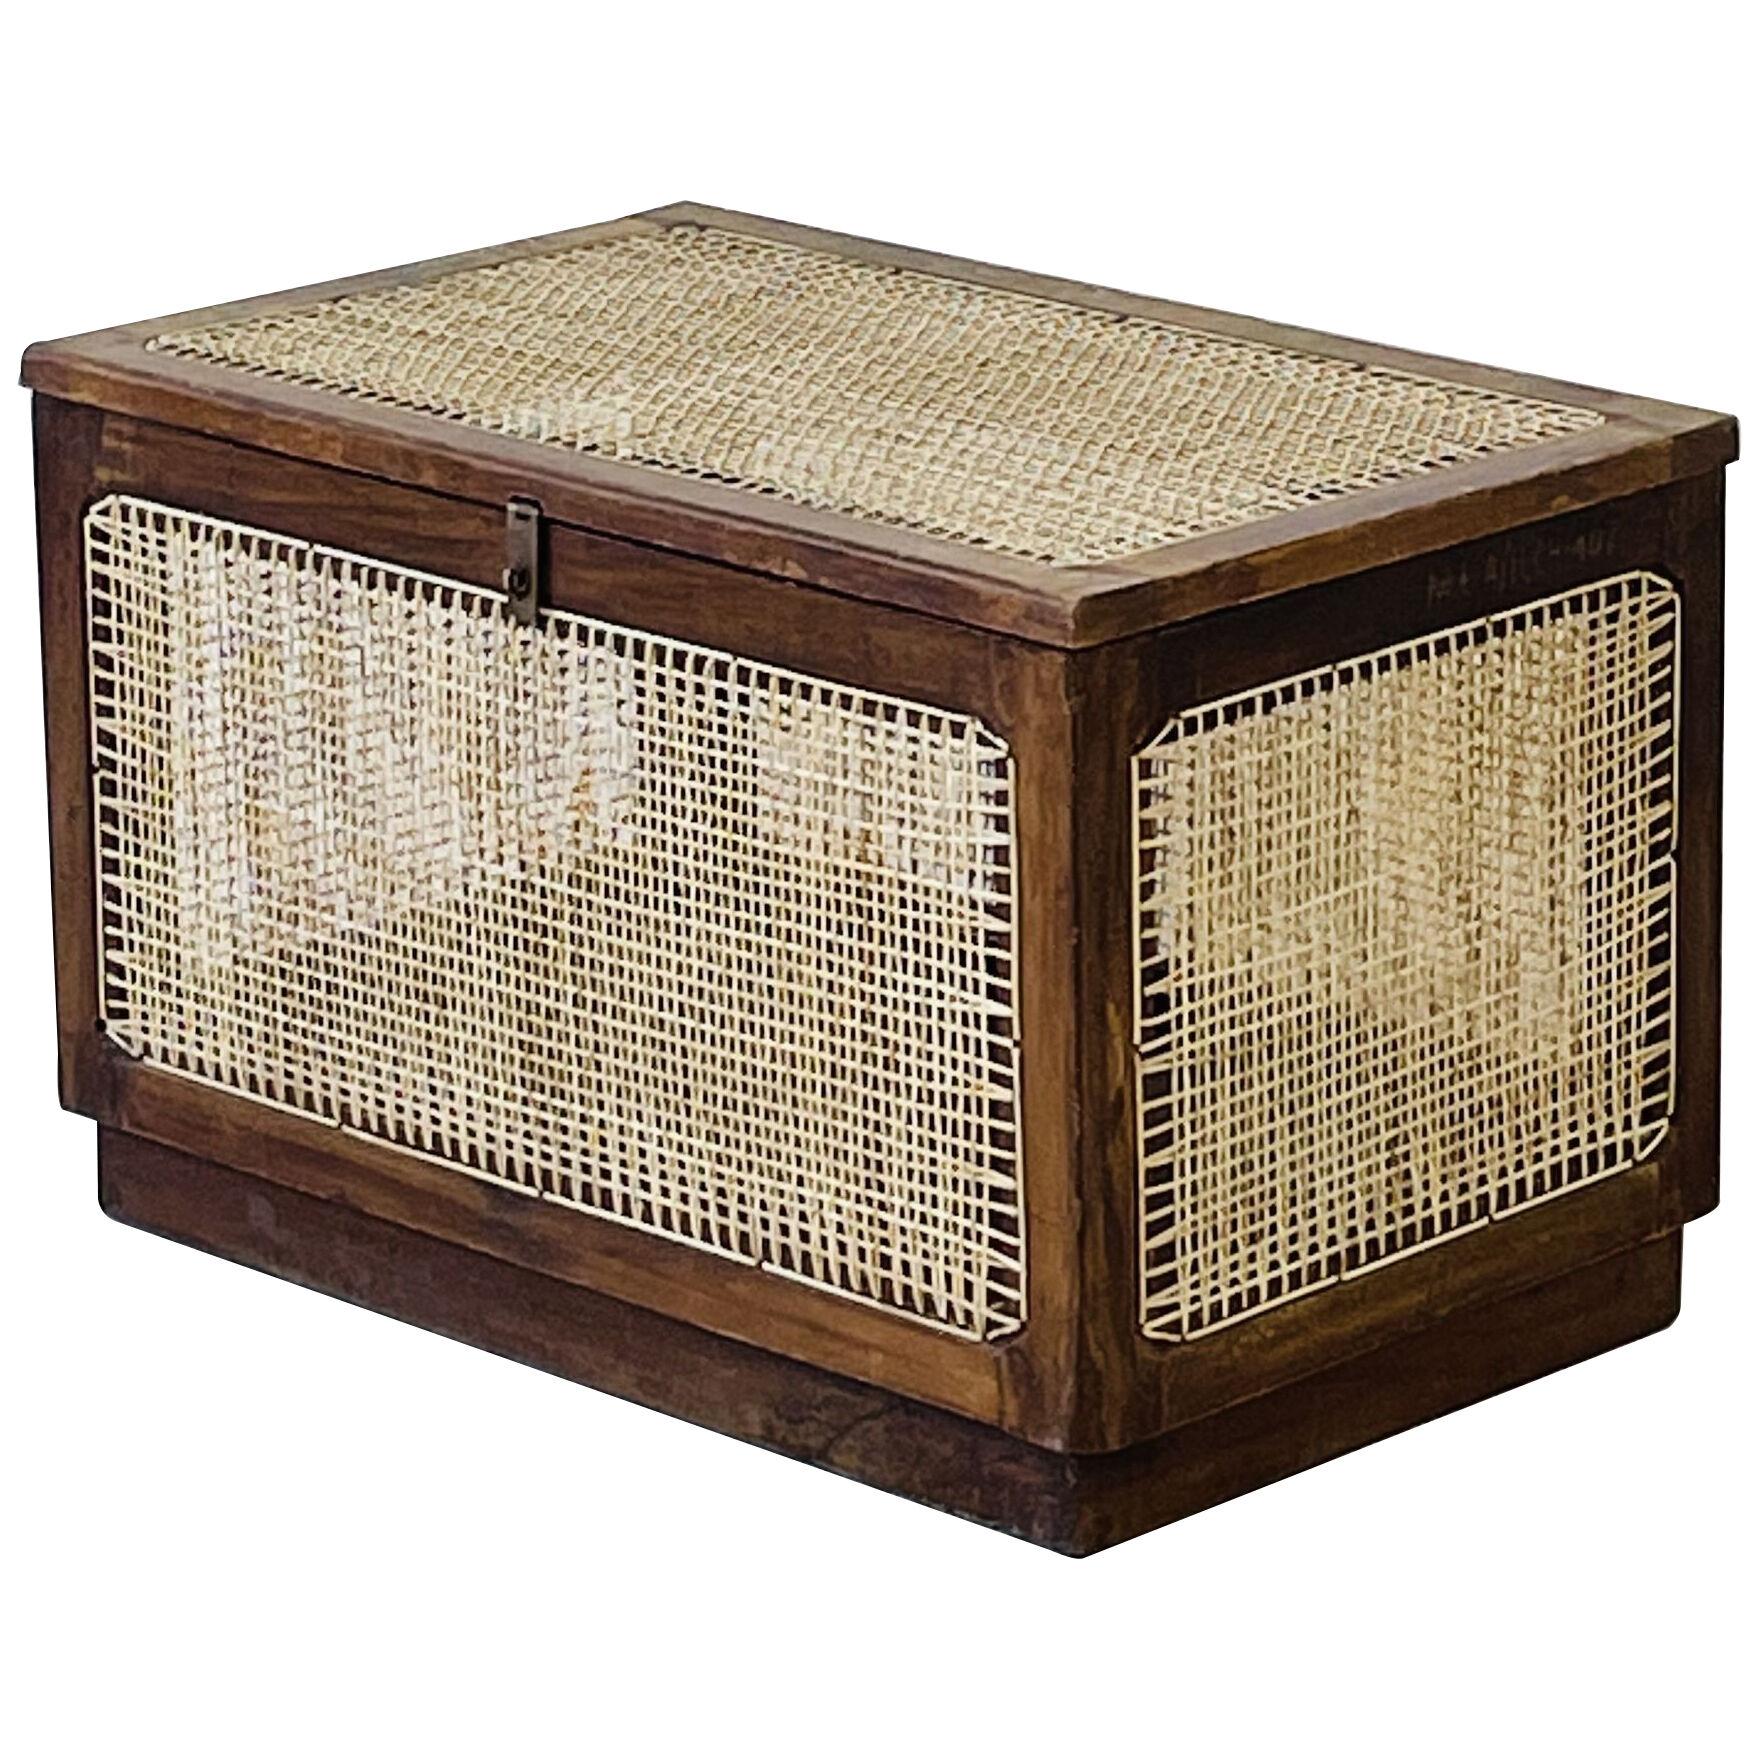 Authentic Pierre Jeanneret Linen Basket / Box / Storage, Mid-Century Modern